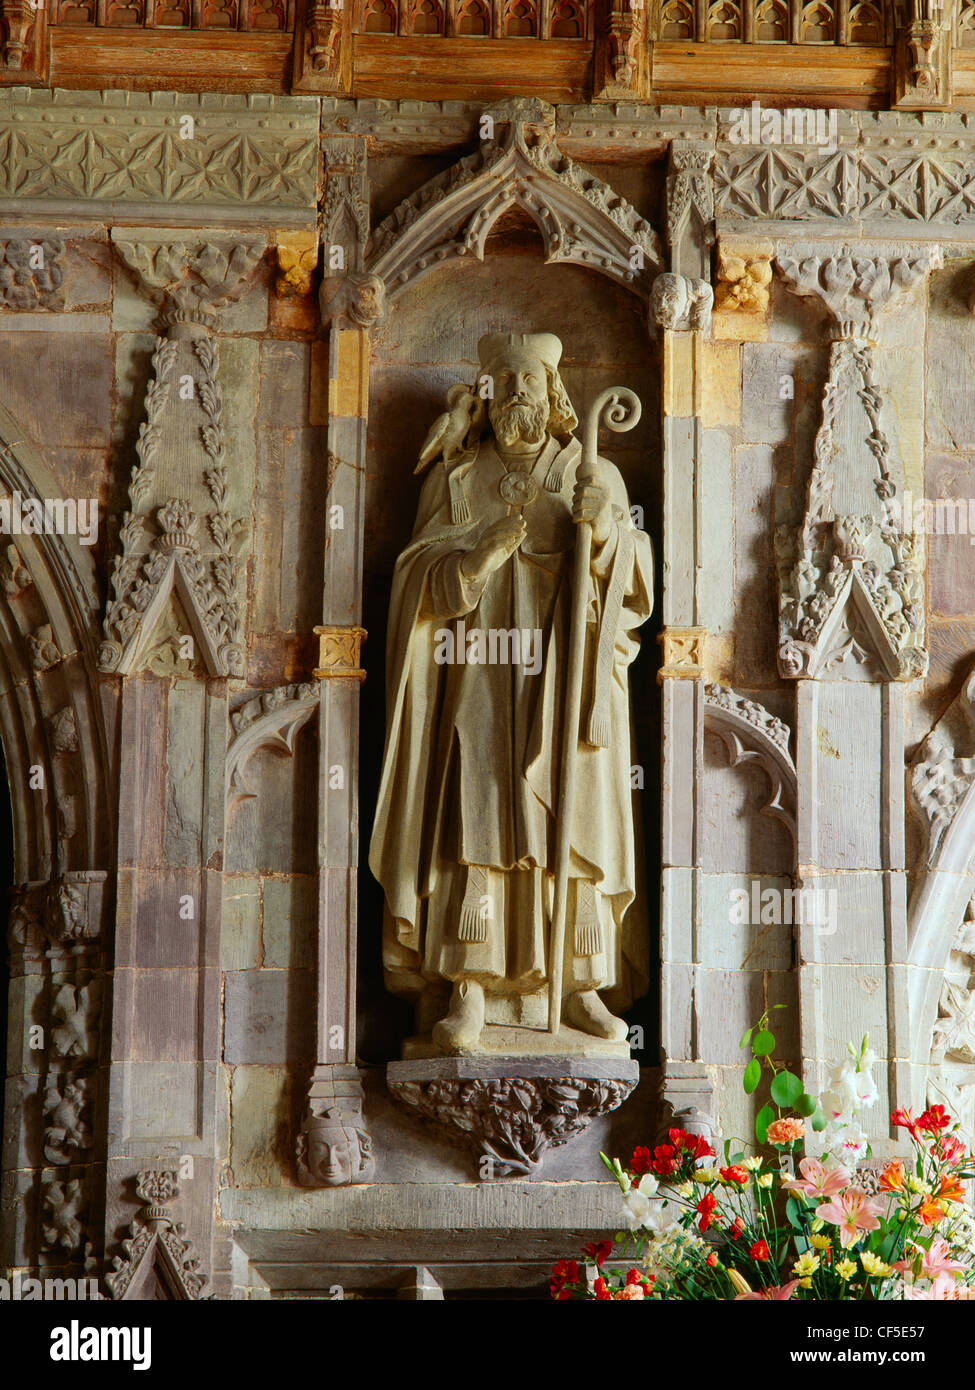 Eine moderne Statue von St. David (Dewi Sant), Schutzpatron von Wales, gelegt in das 14. Jahrhundert Lettner zwischen Mittelschiff und choi Stockfoto